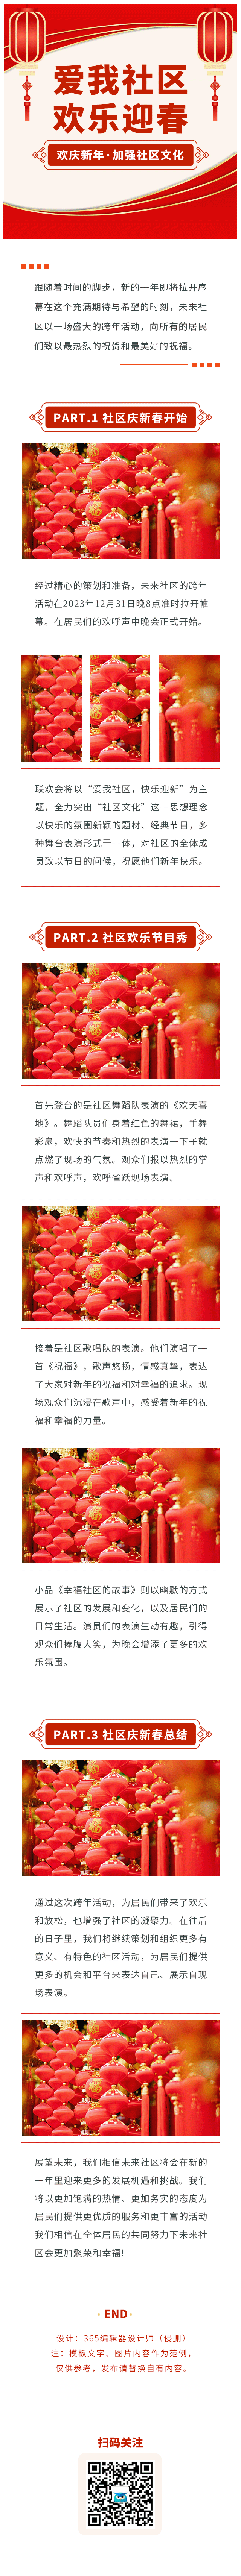 社区文化社区活动新年春节政府公益党建